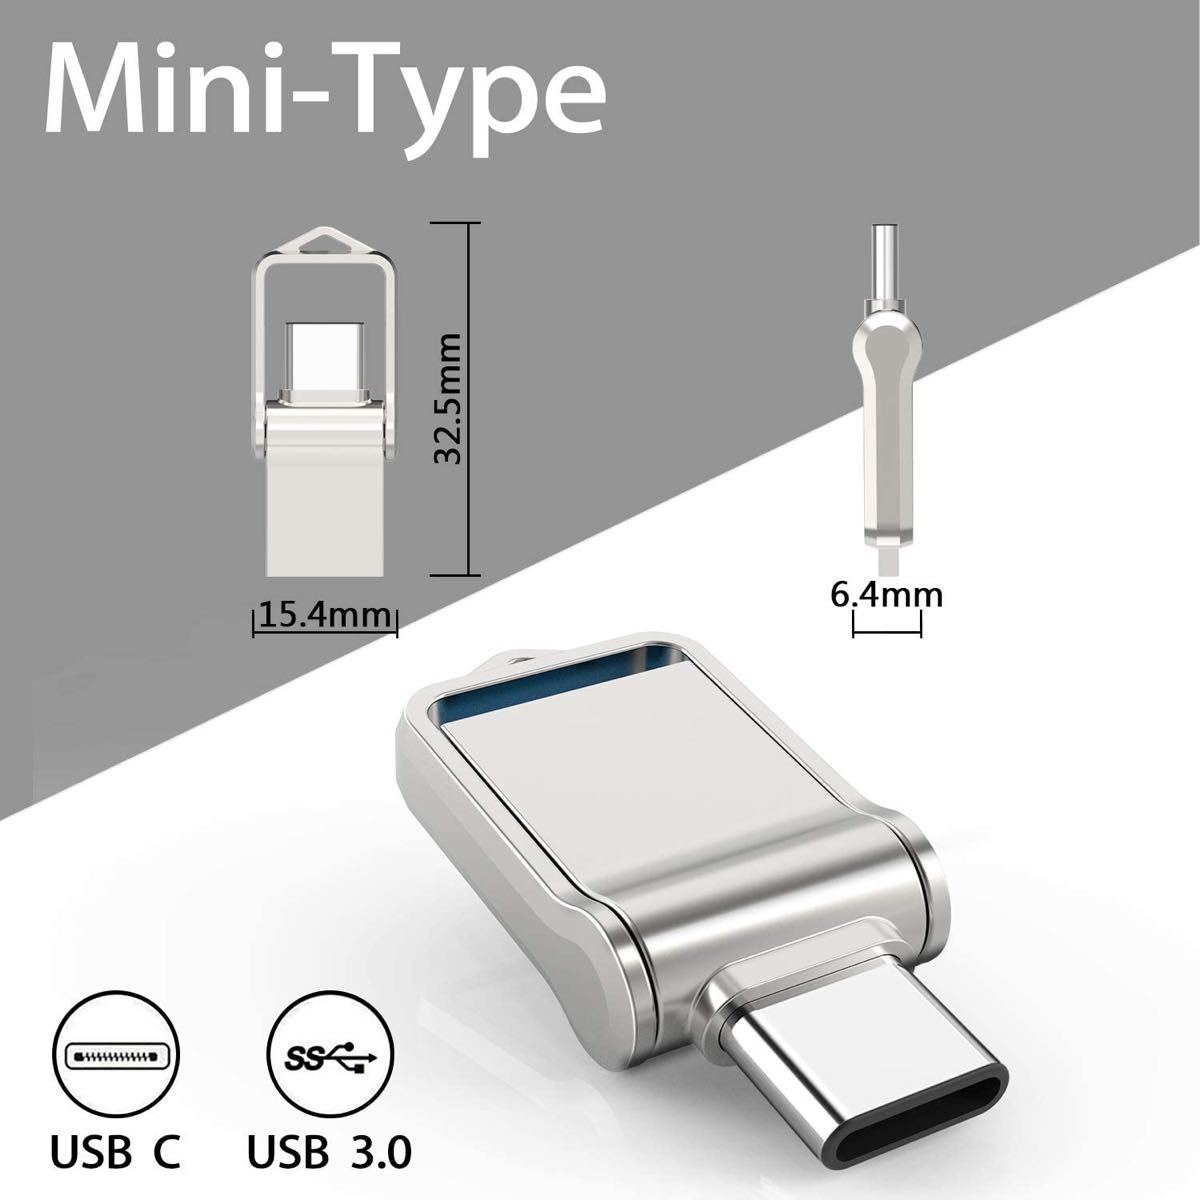 USBメモリ32GB Type Cメモリ USB3.0 2in1 金属 防水360度回転デザイン高速データ転送 